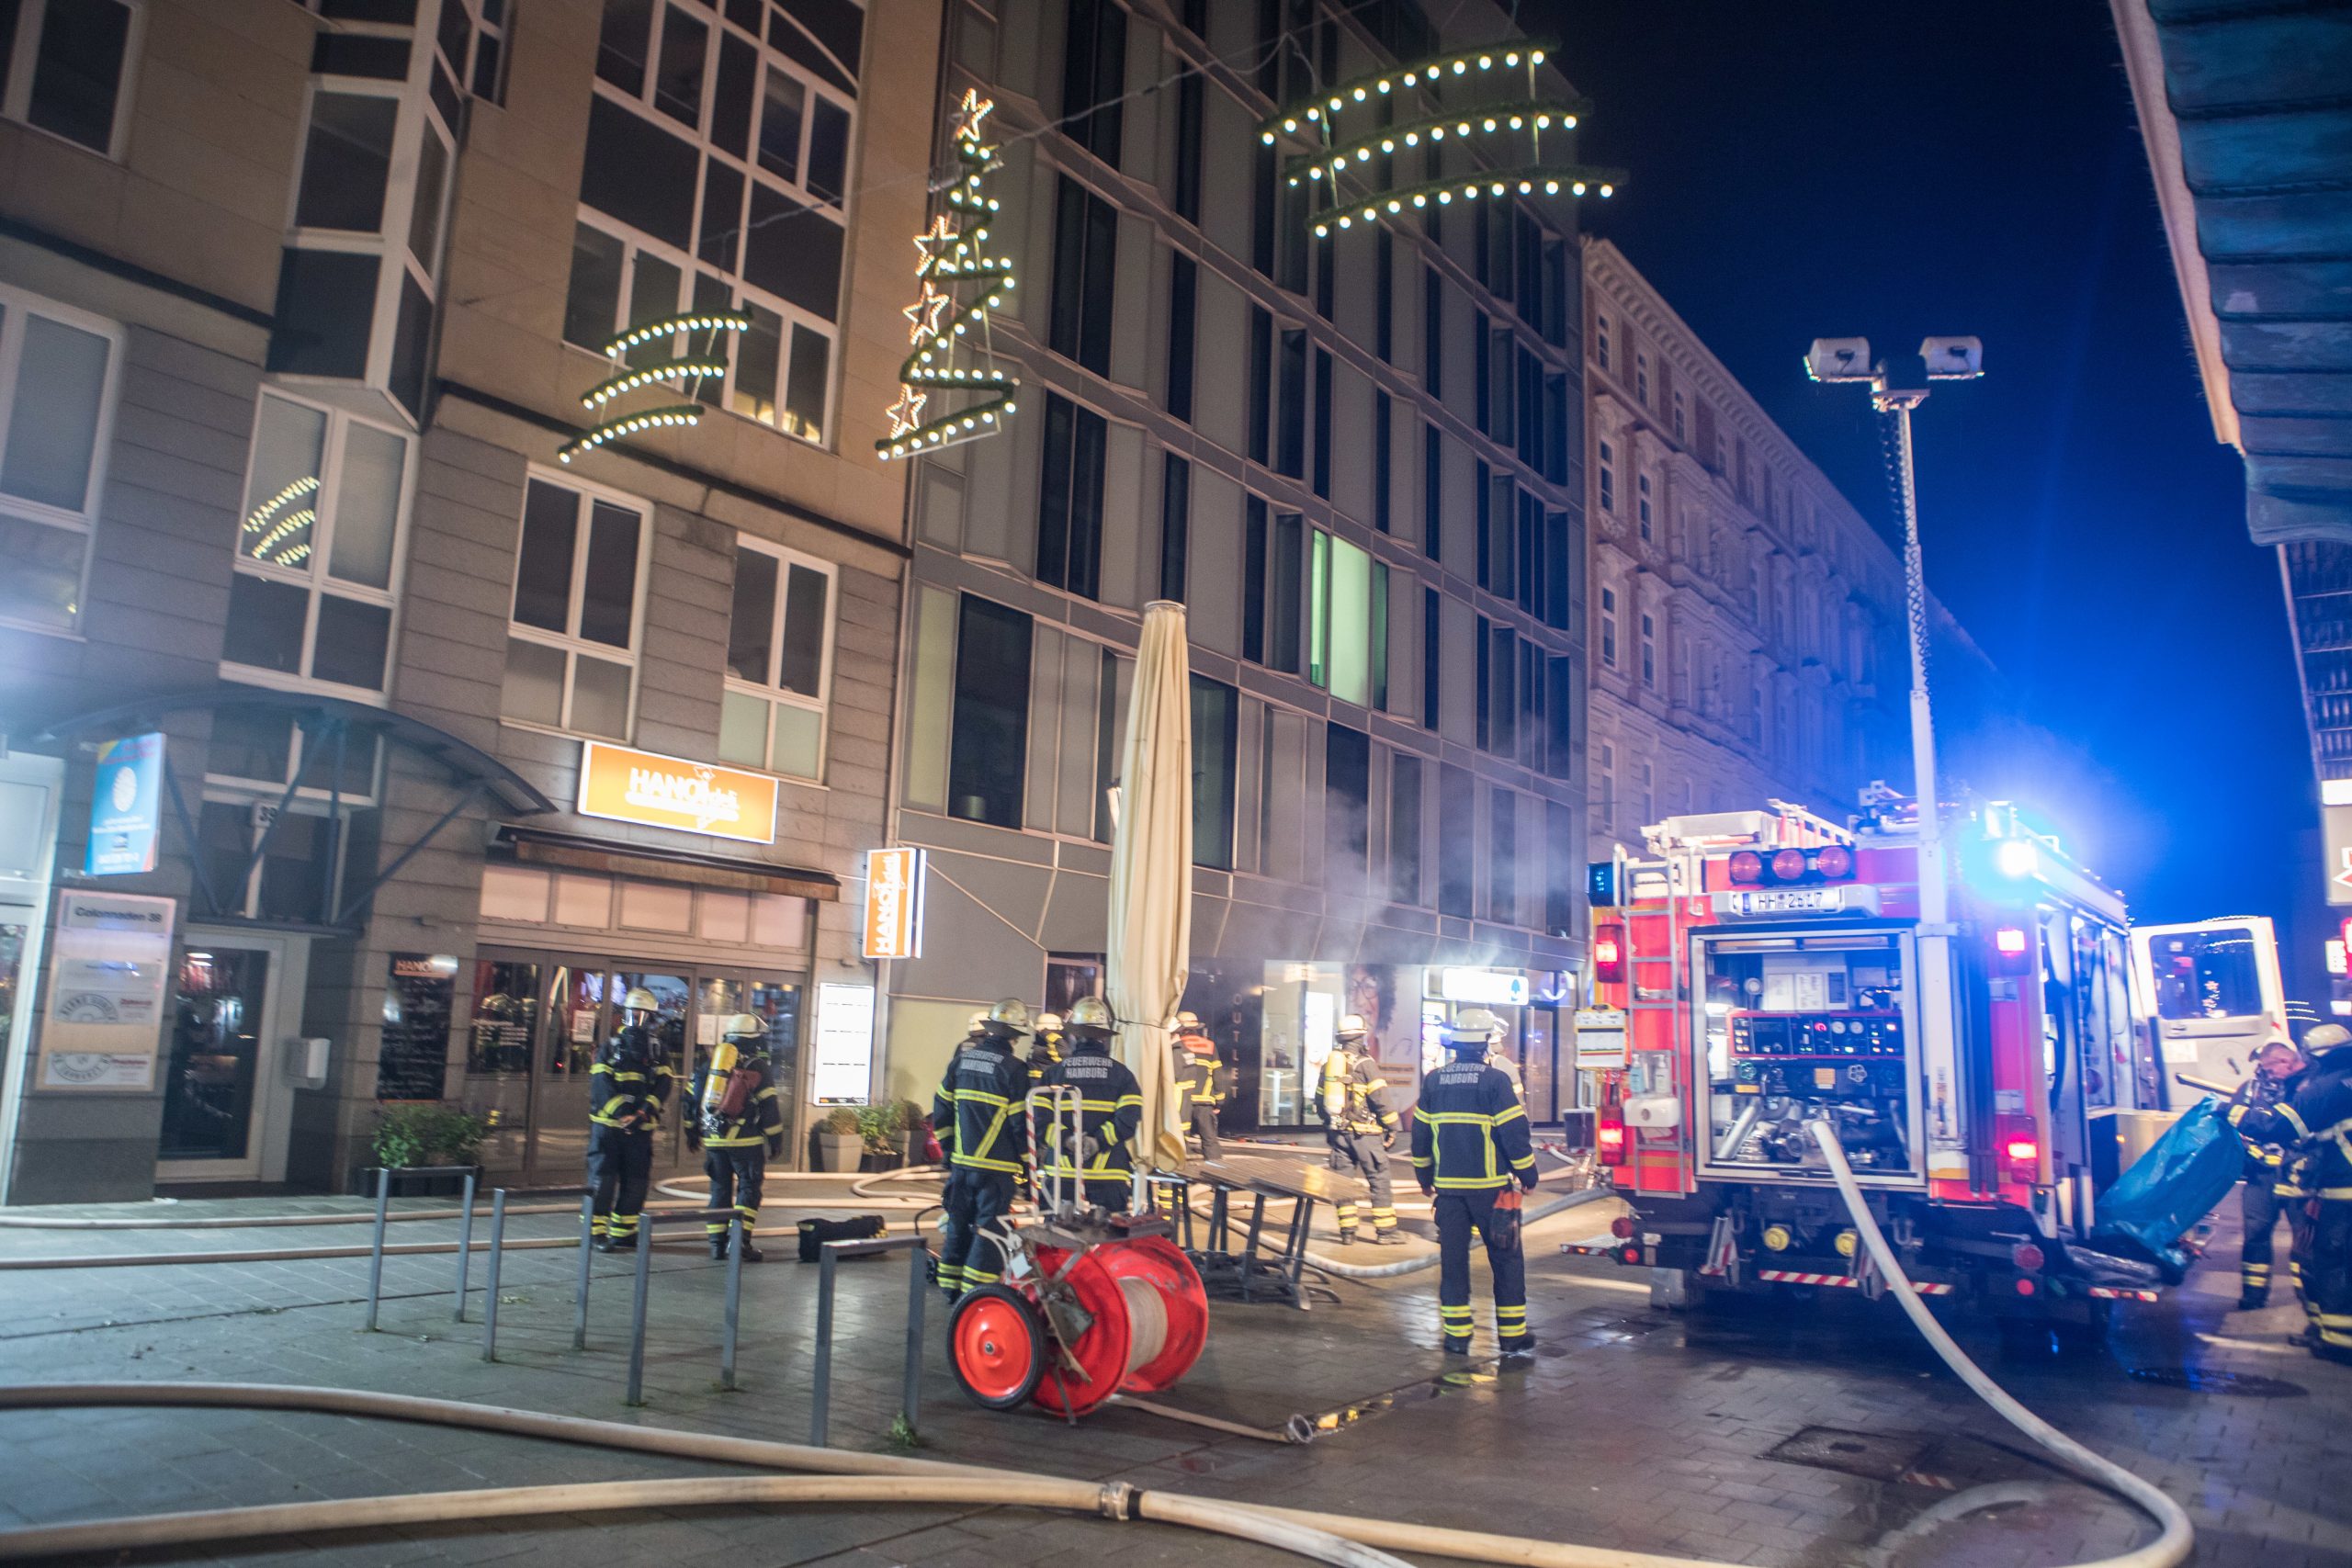 Die Feuerwehr löscht einen Brand in einem Modegeschäft in Hamburg